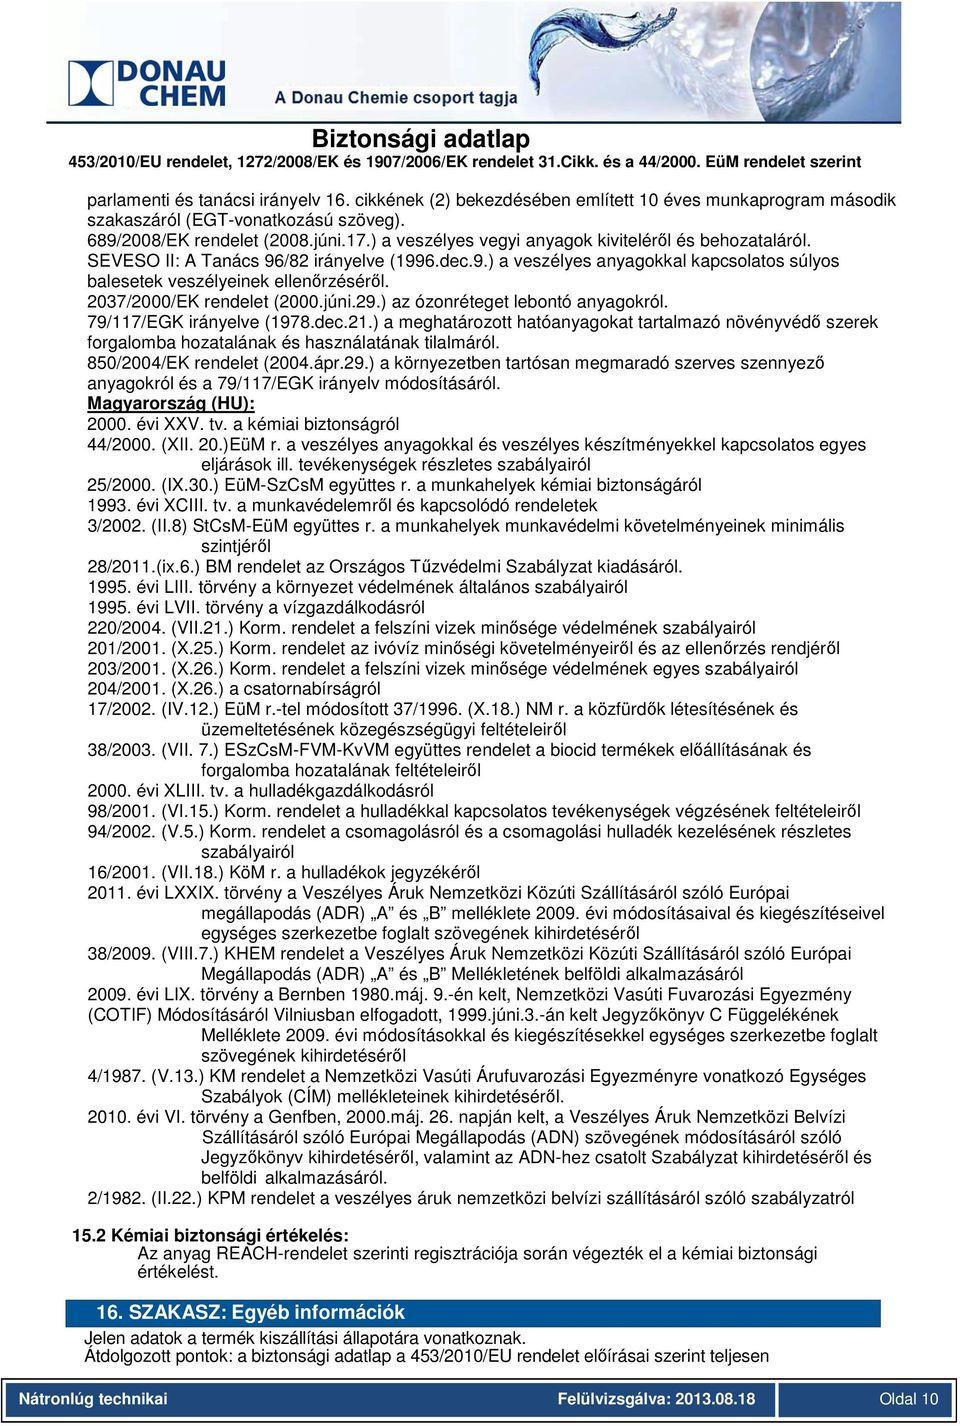 2037/2000/EK rendelet (2000.júni.29.) az ózonréteget lebontó anyagokról. 79/117/EGK irányelve (1978.dec.21.